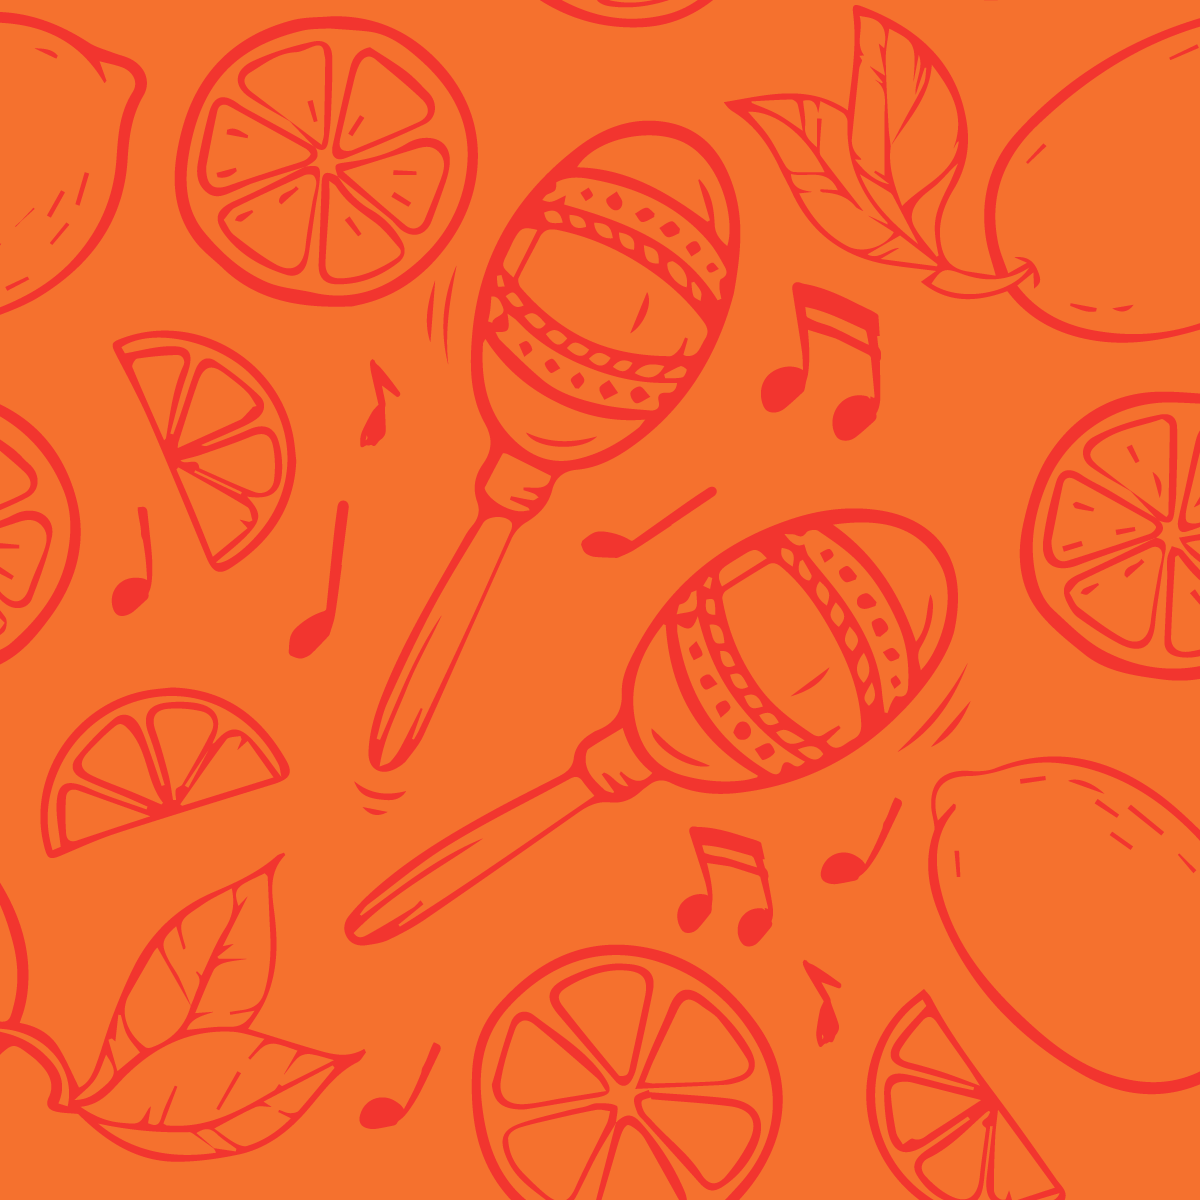 Bright orange graphic featuring illustrated maracas, citrus fruit, and music notes